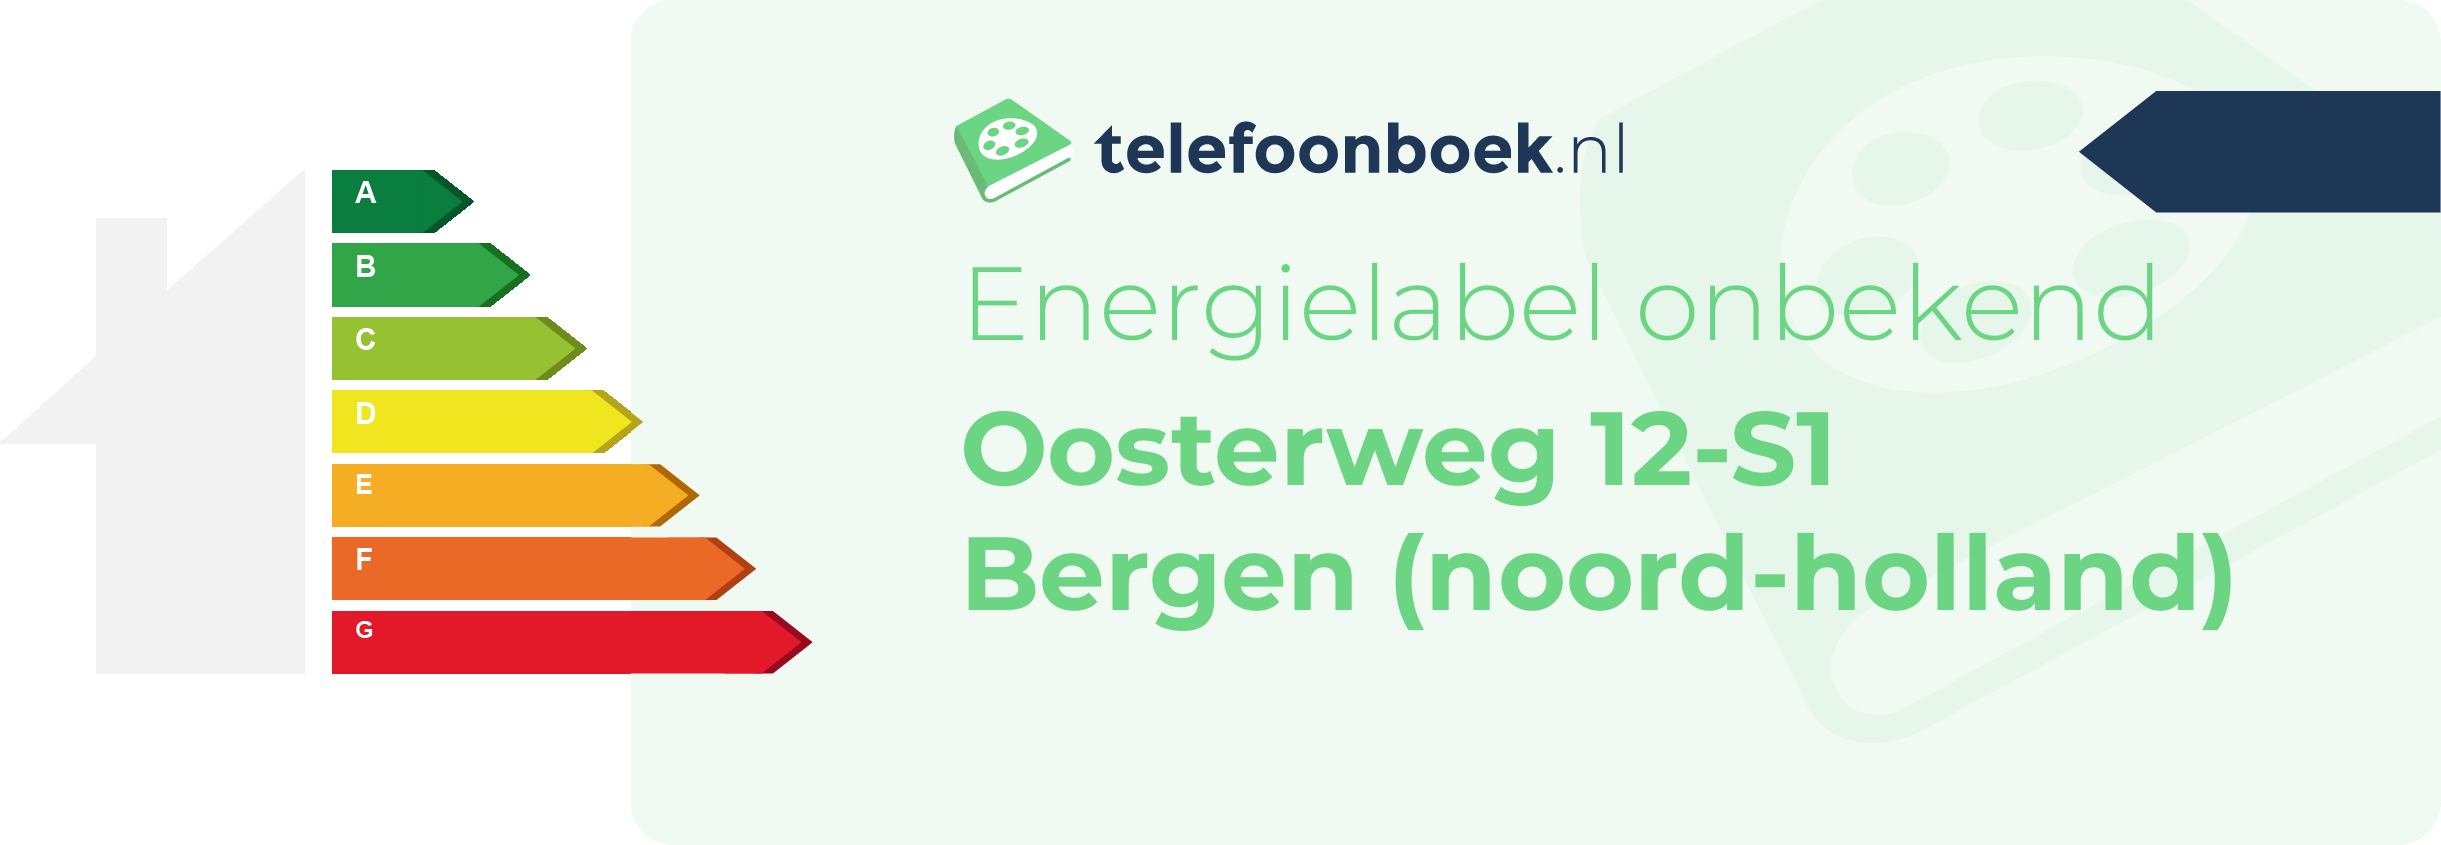 Energielabel Oosterweg 12-S1 Bergen (Noord-Holland)